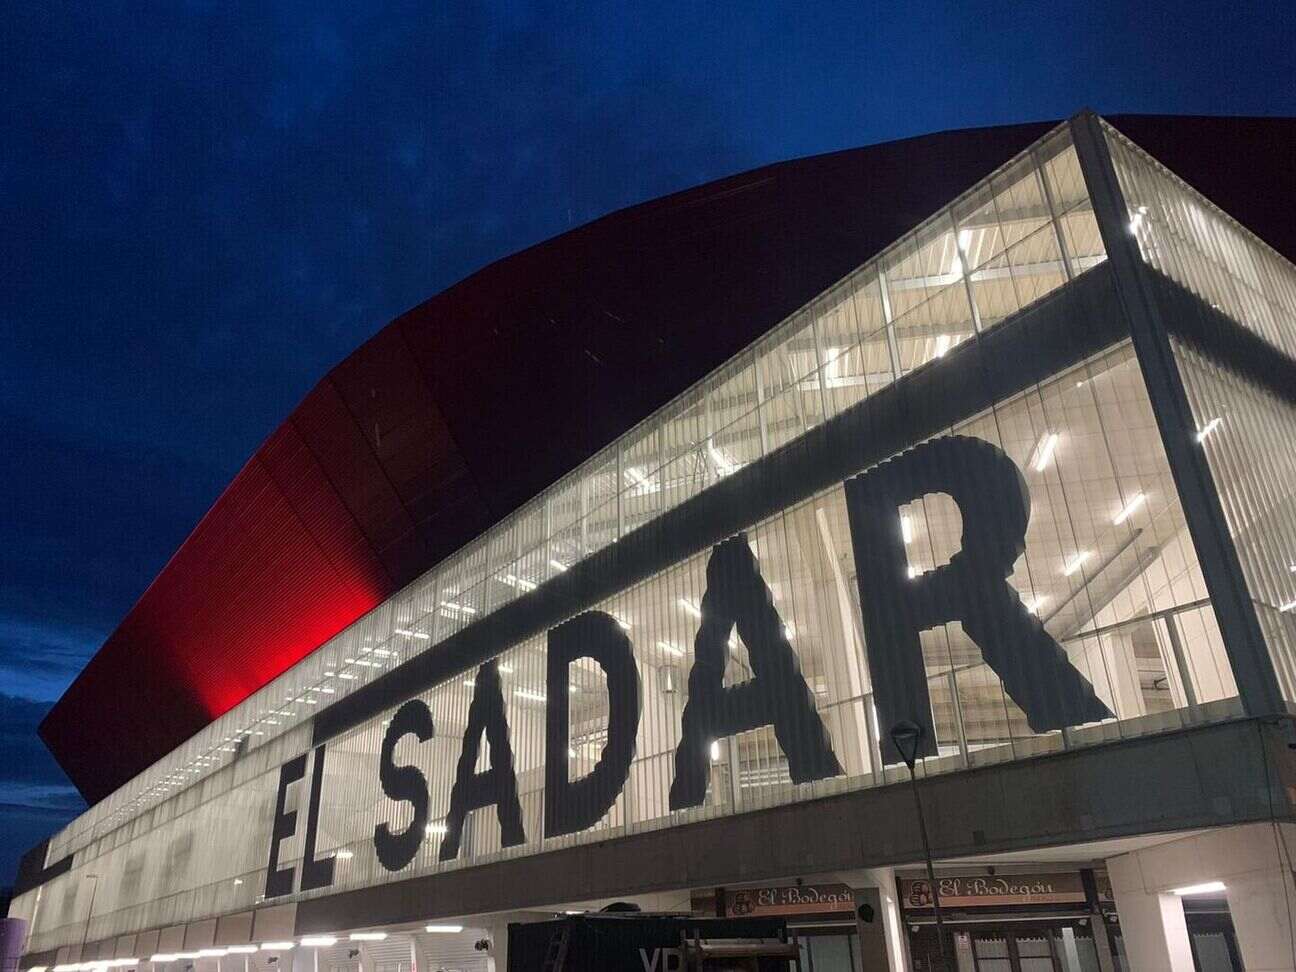 Estadio El Sadar, Pamplona